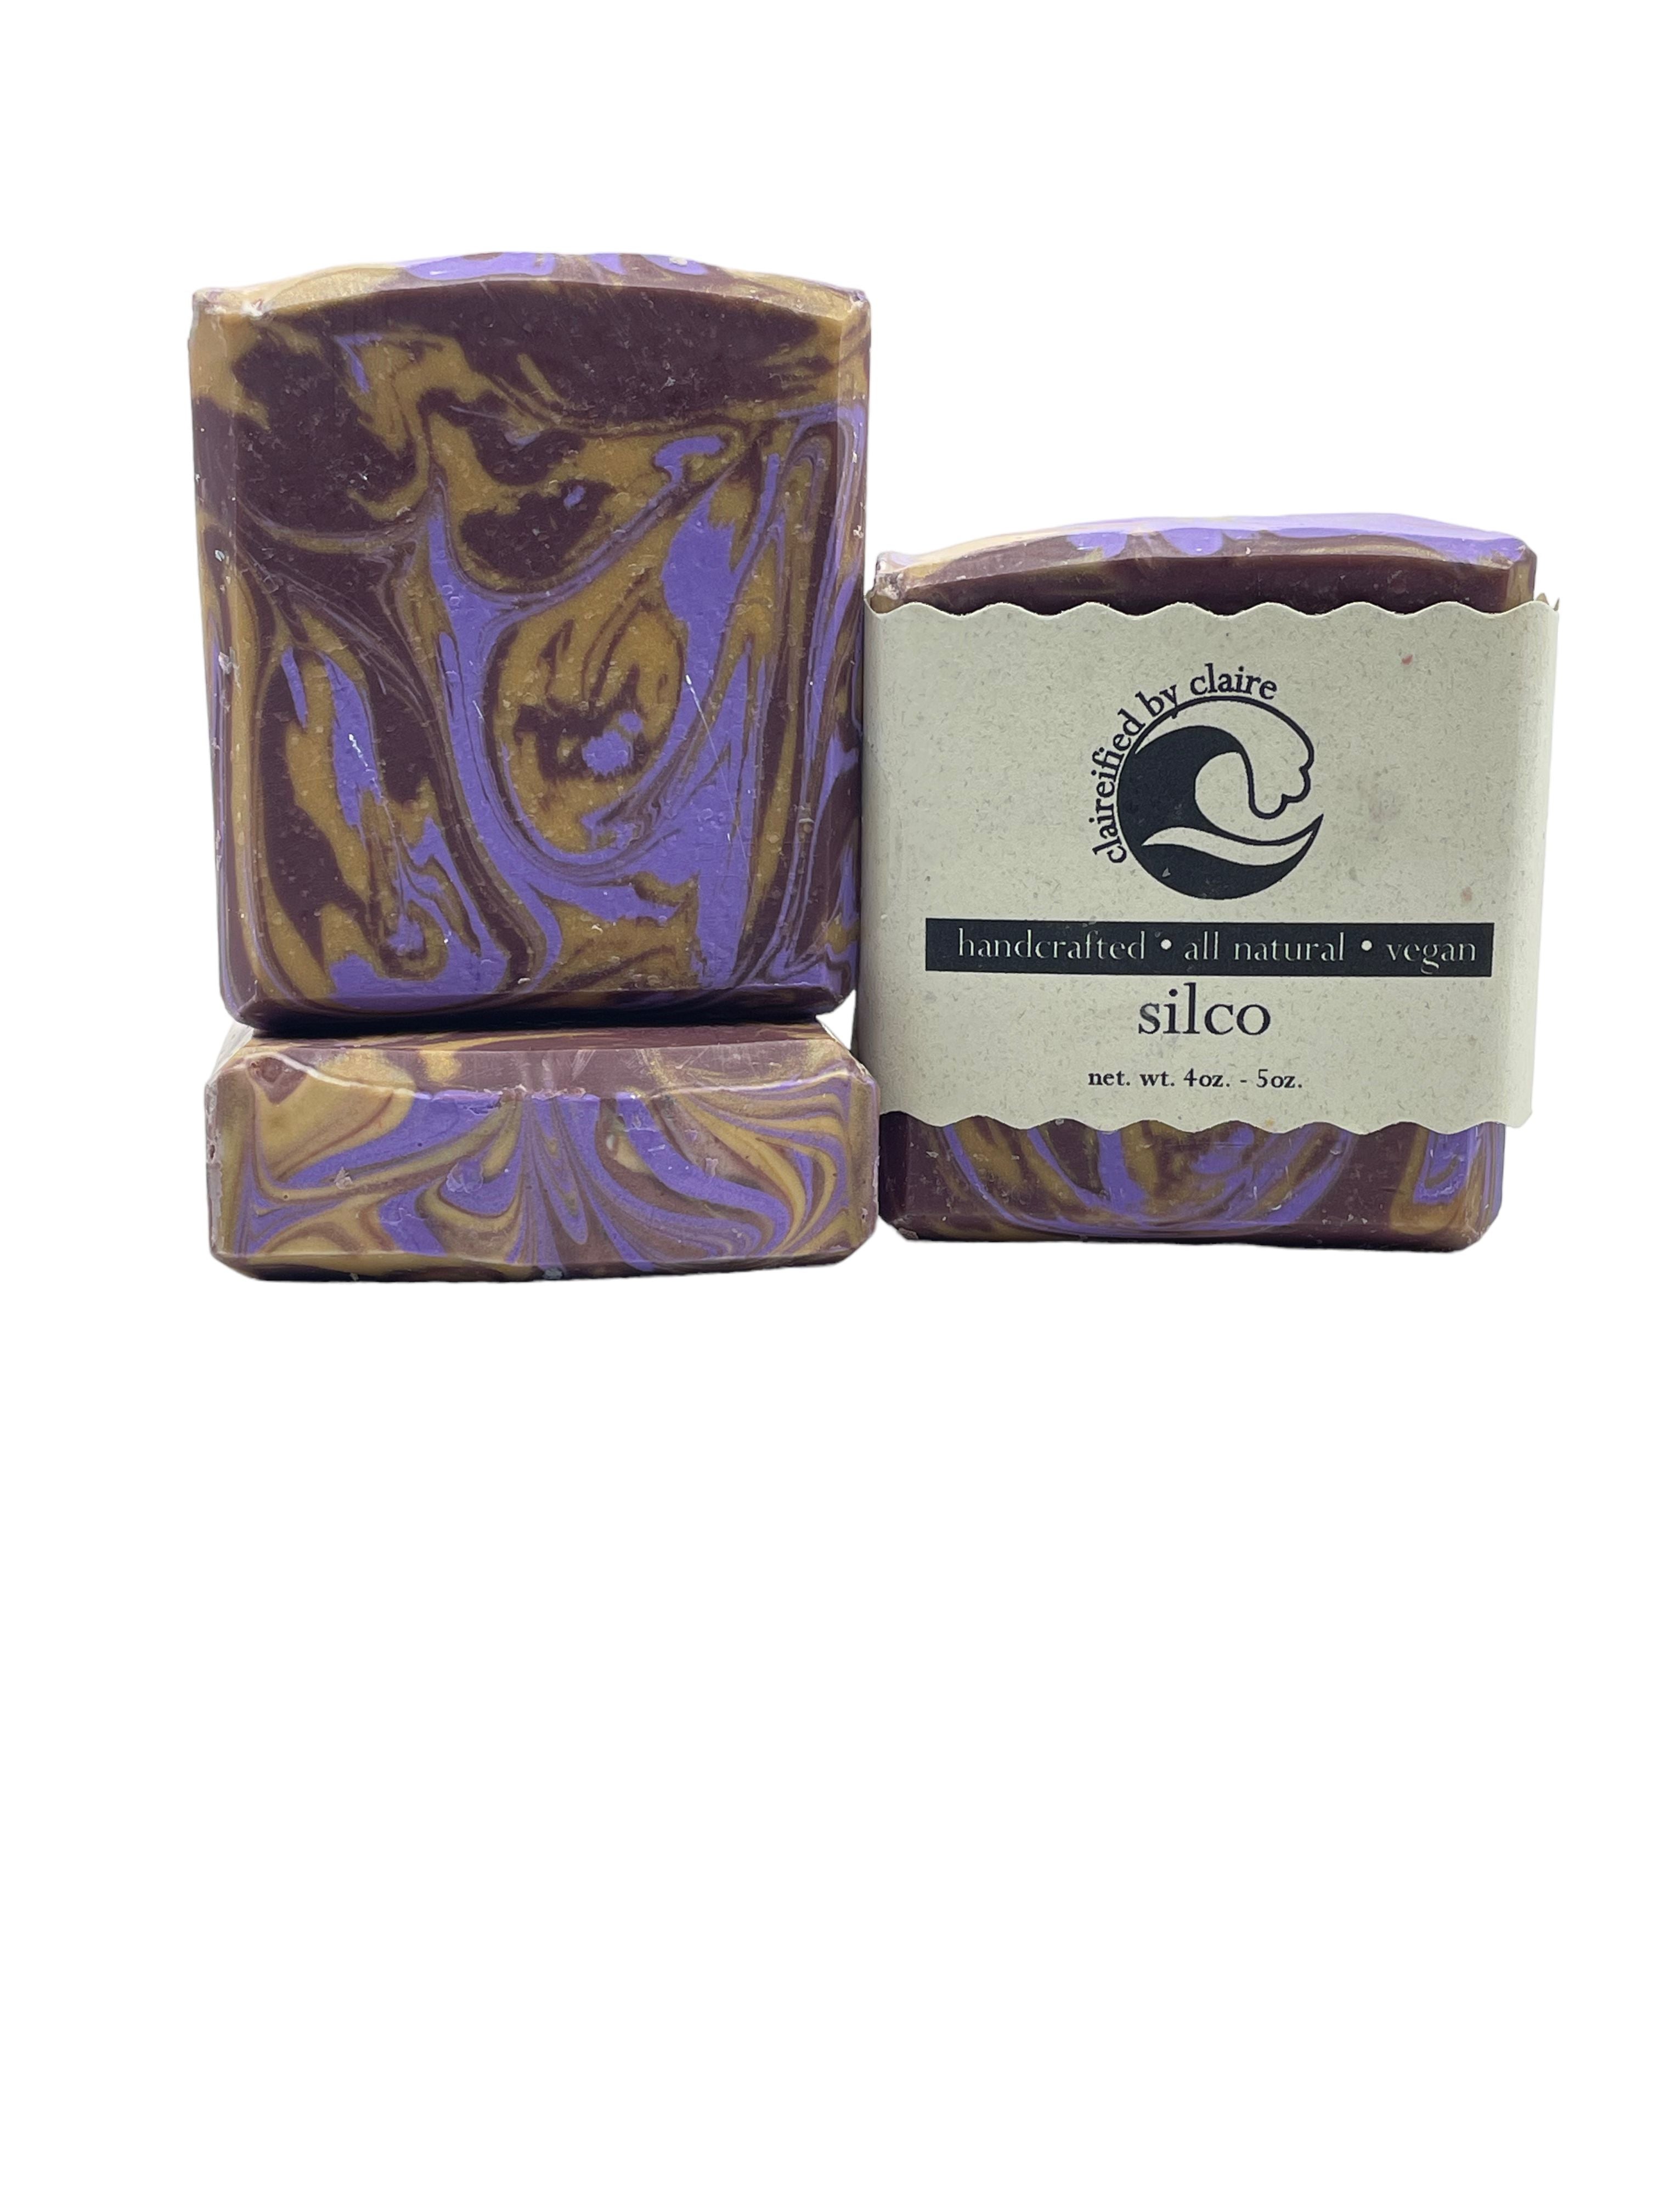 Silco from Arcane Inspired Handmade Soap